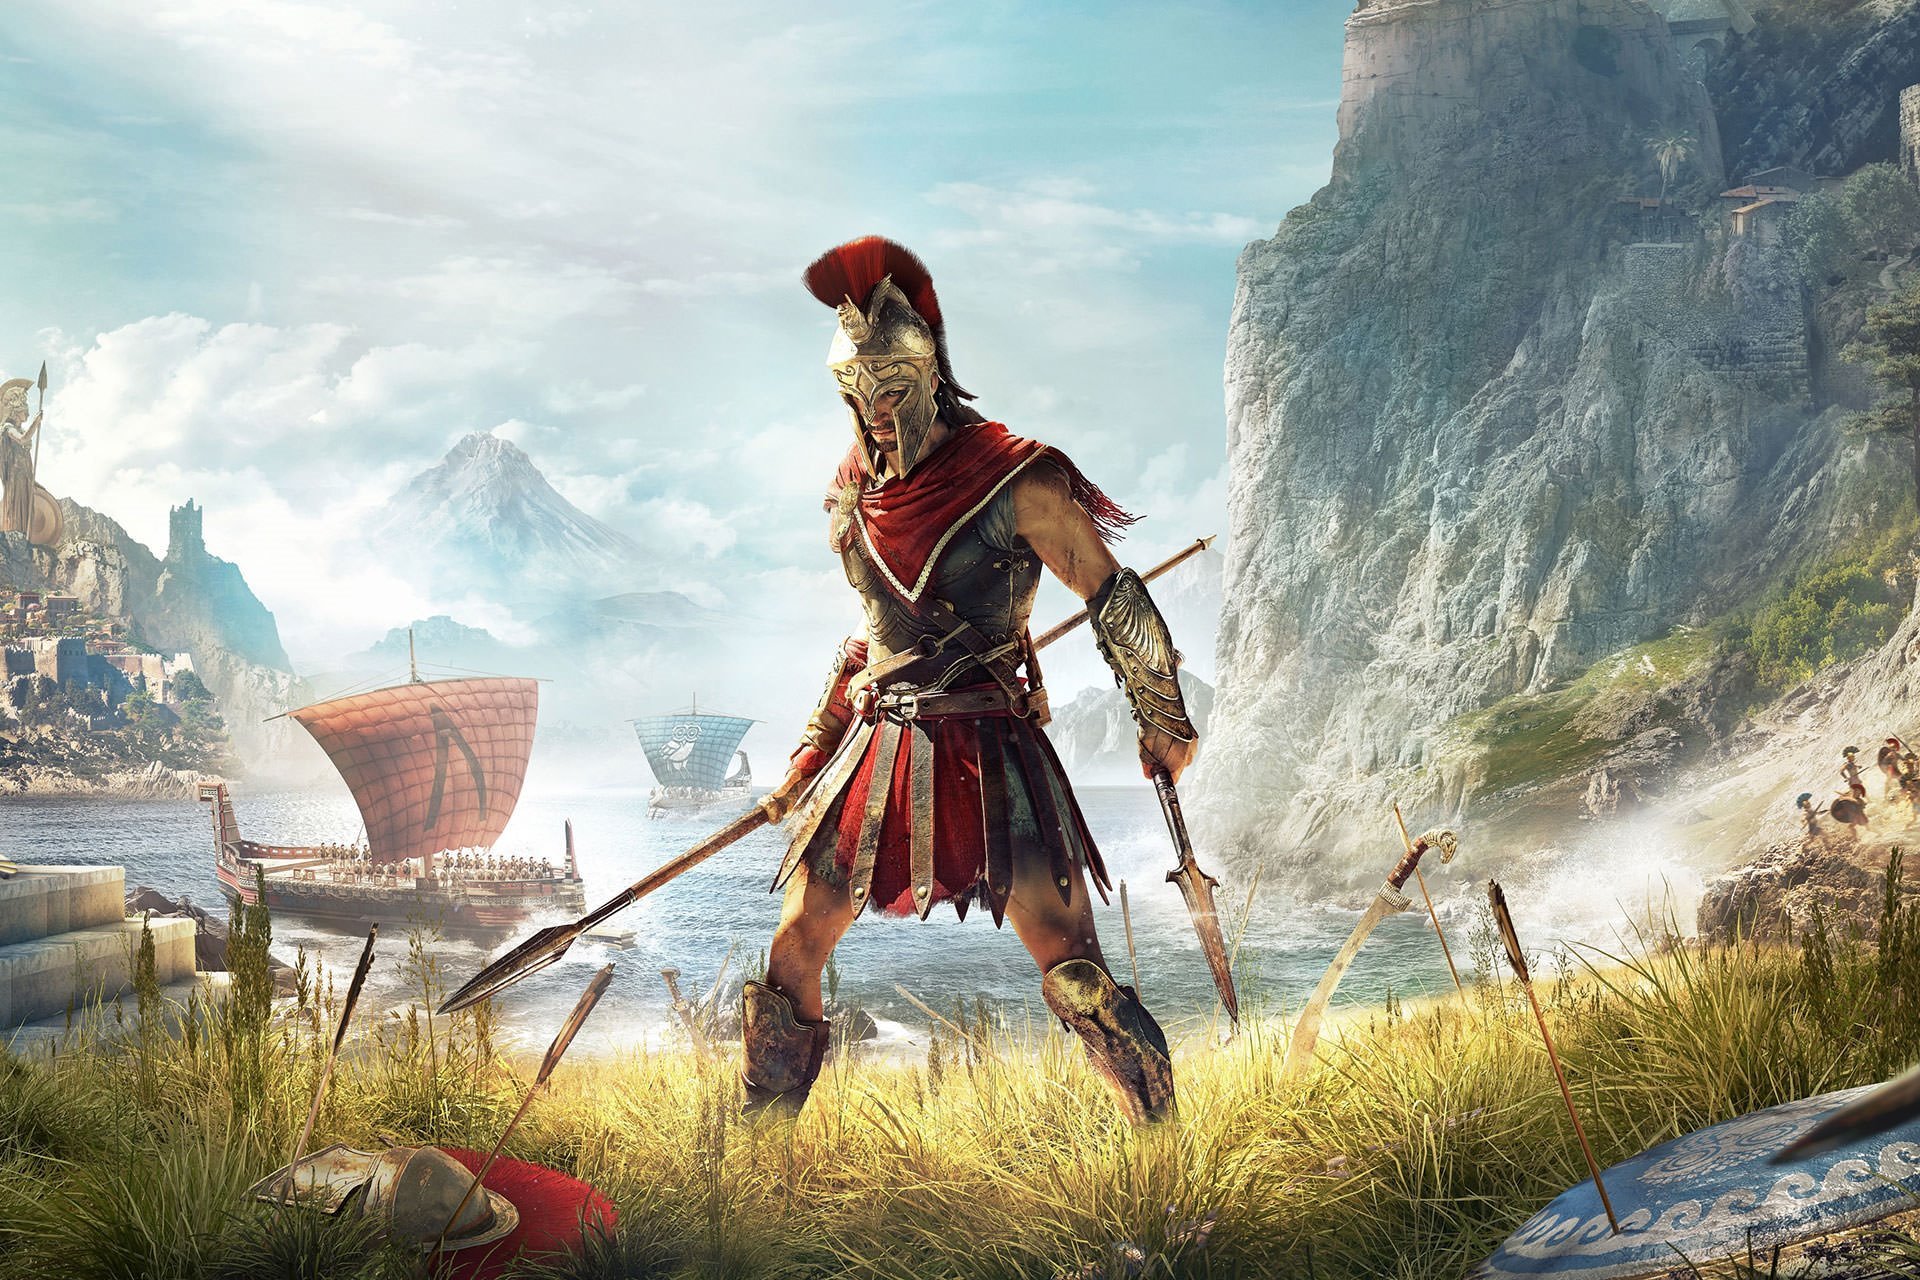 خرید بازی Assassin's Creed: Odyssey - اساسینز کرید: ادیسه ایکس باکس xbox با قیمت مناسب همراه نقد و بررسی